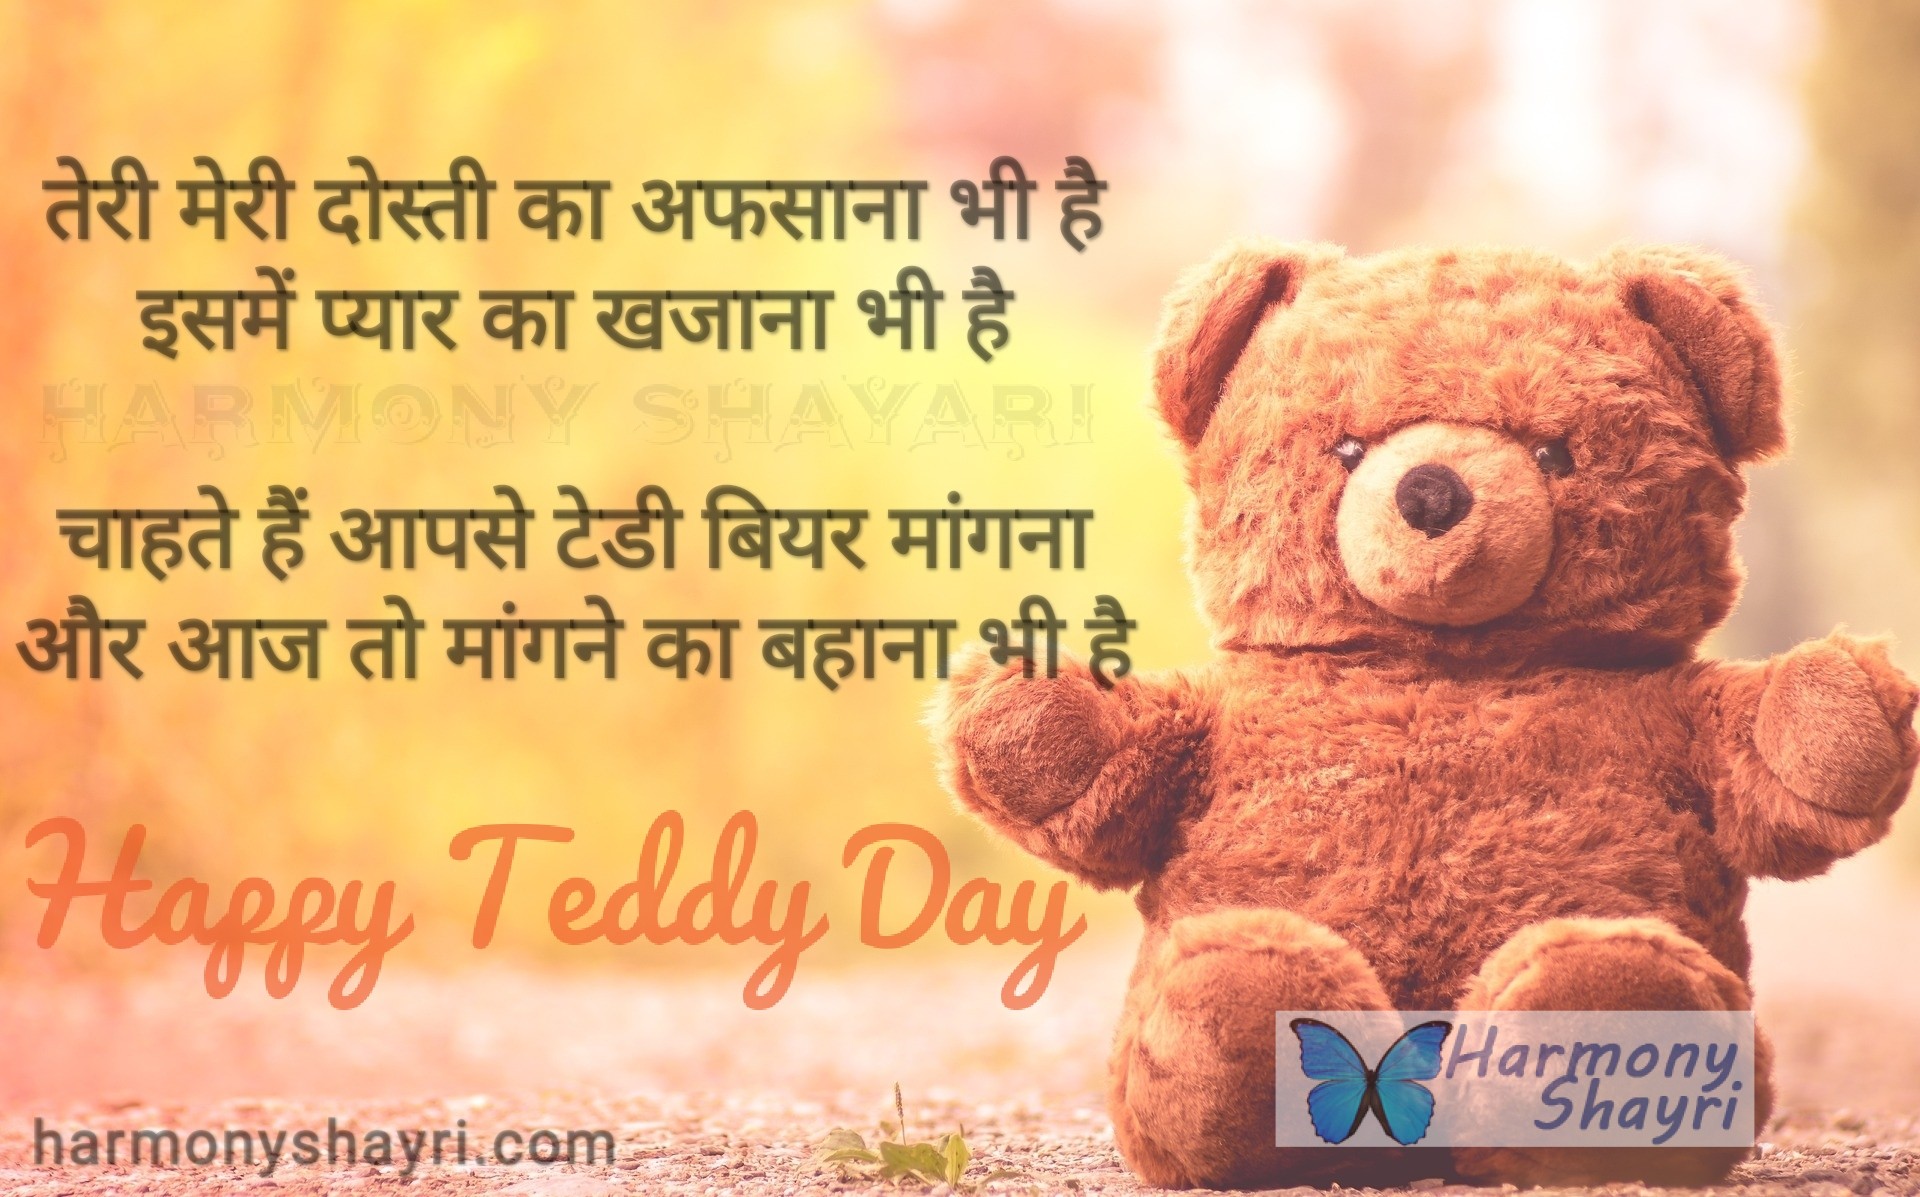 Teri meri dosti ka afsana bhi hai – Happy Teddy Day